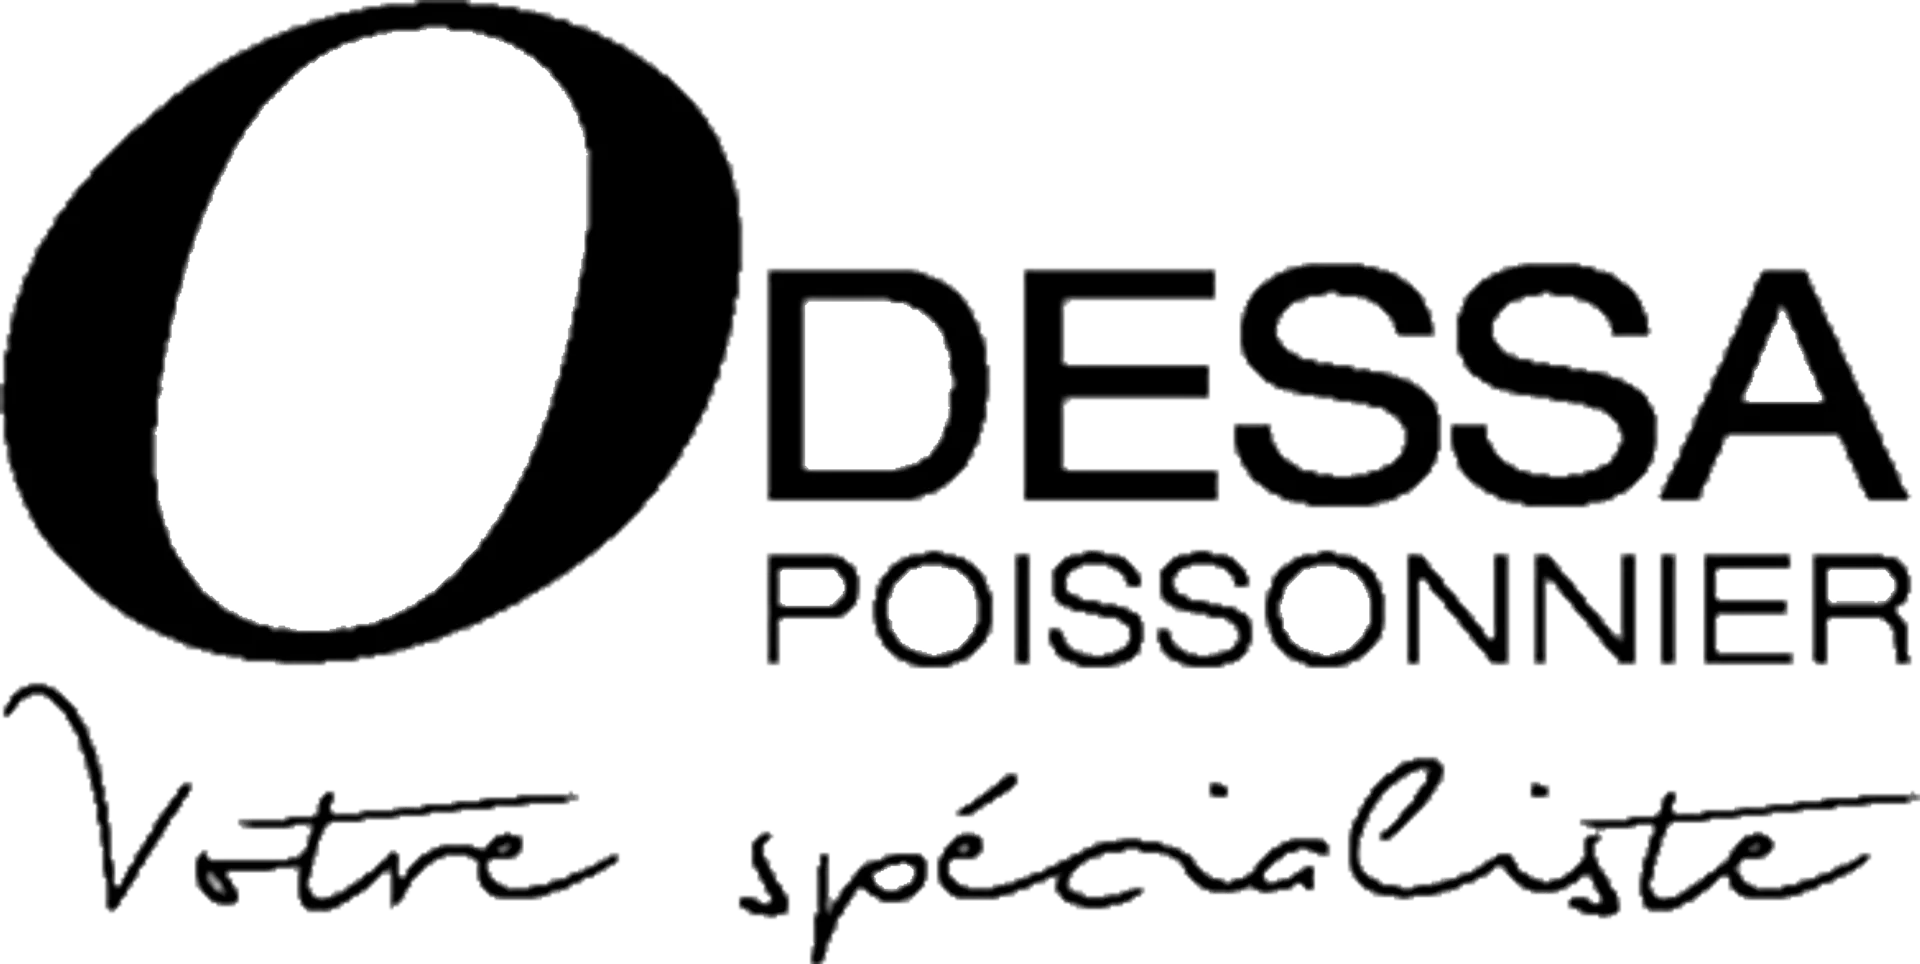 ODESSA POISSONNER logo de circulaire